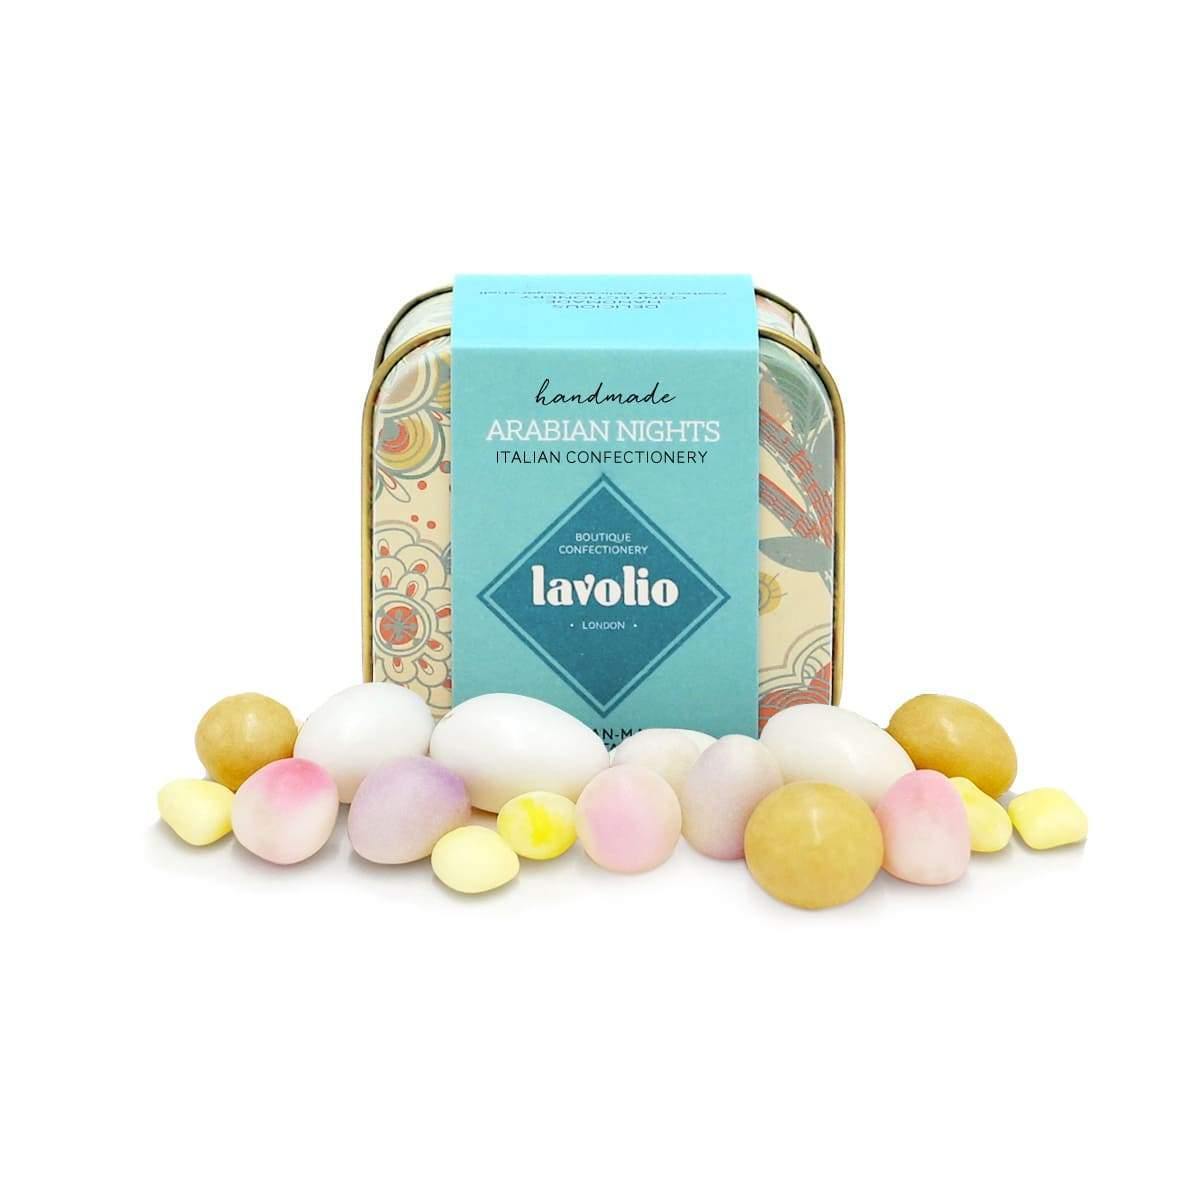 Lavolio boutique-confectionery London Arabian Nights mini tins